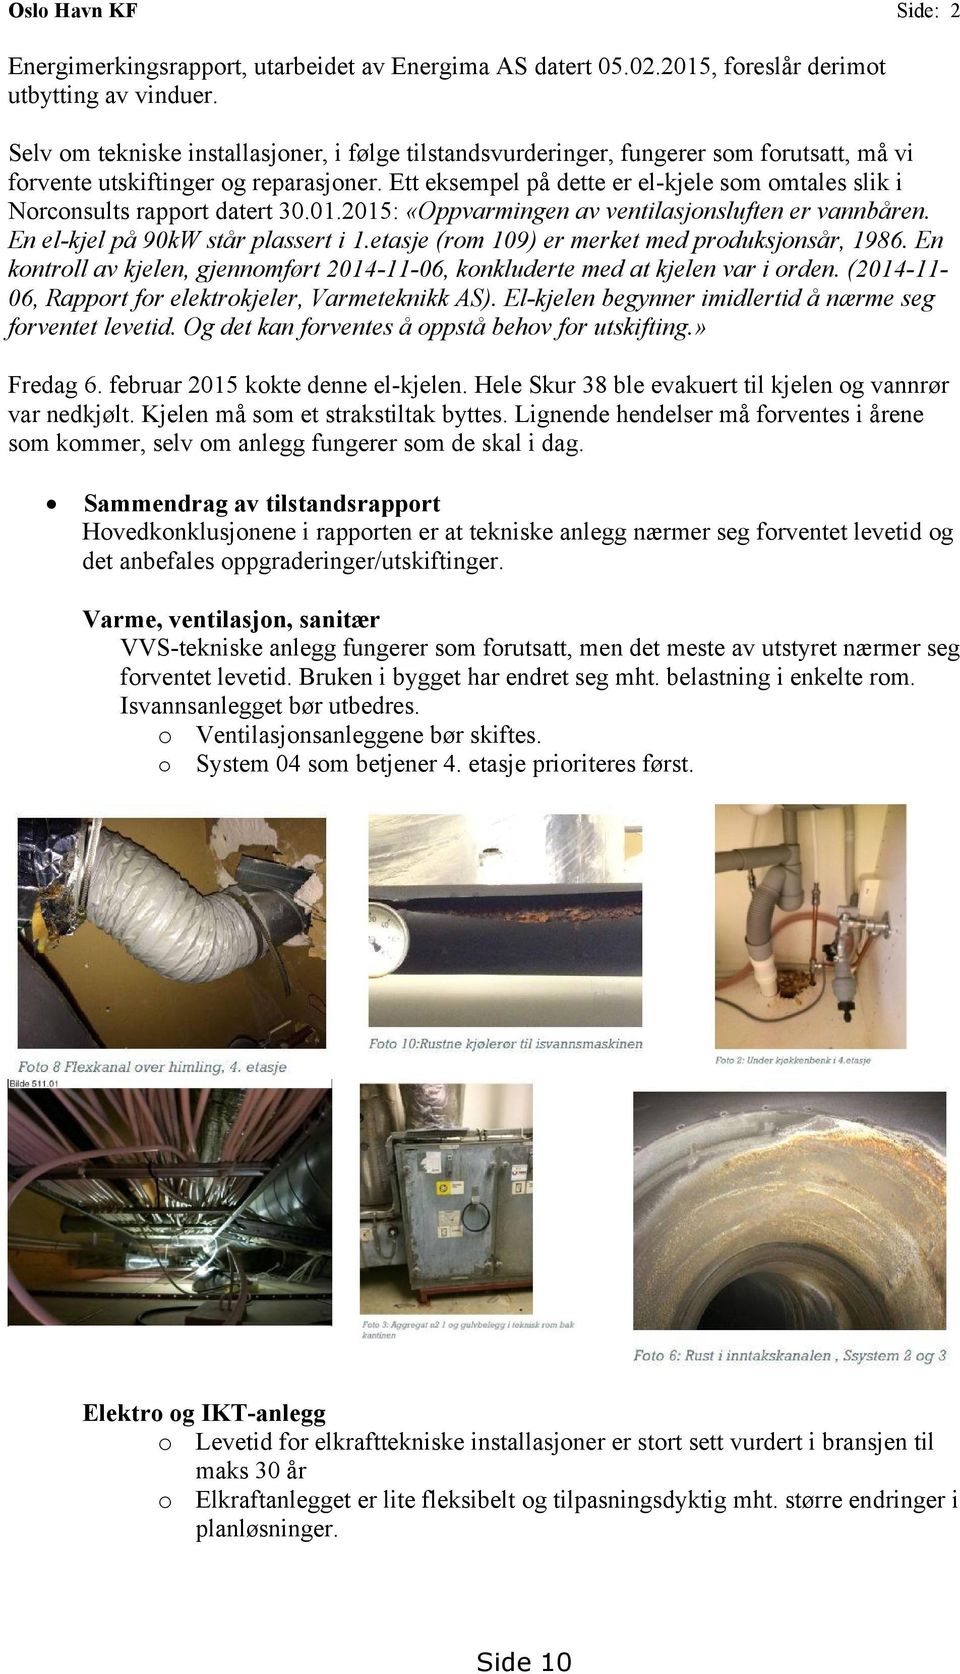 Ett eksempel på dette er el-kjele som omtales slik i Norconsults rapport datert 30.01.2015: «Oppvarmingen av ventilasjonsluften er vannbåren. En el-kjel på 90kW står plassert i 1.